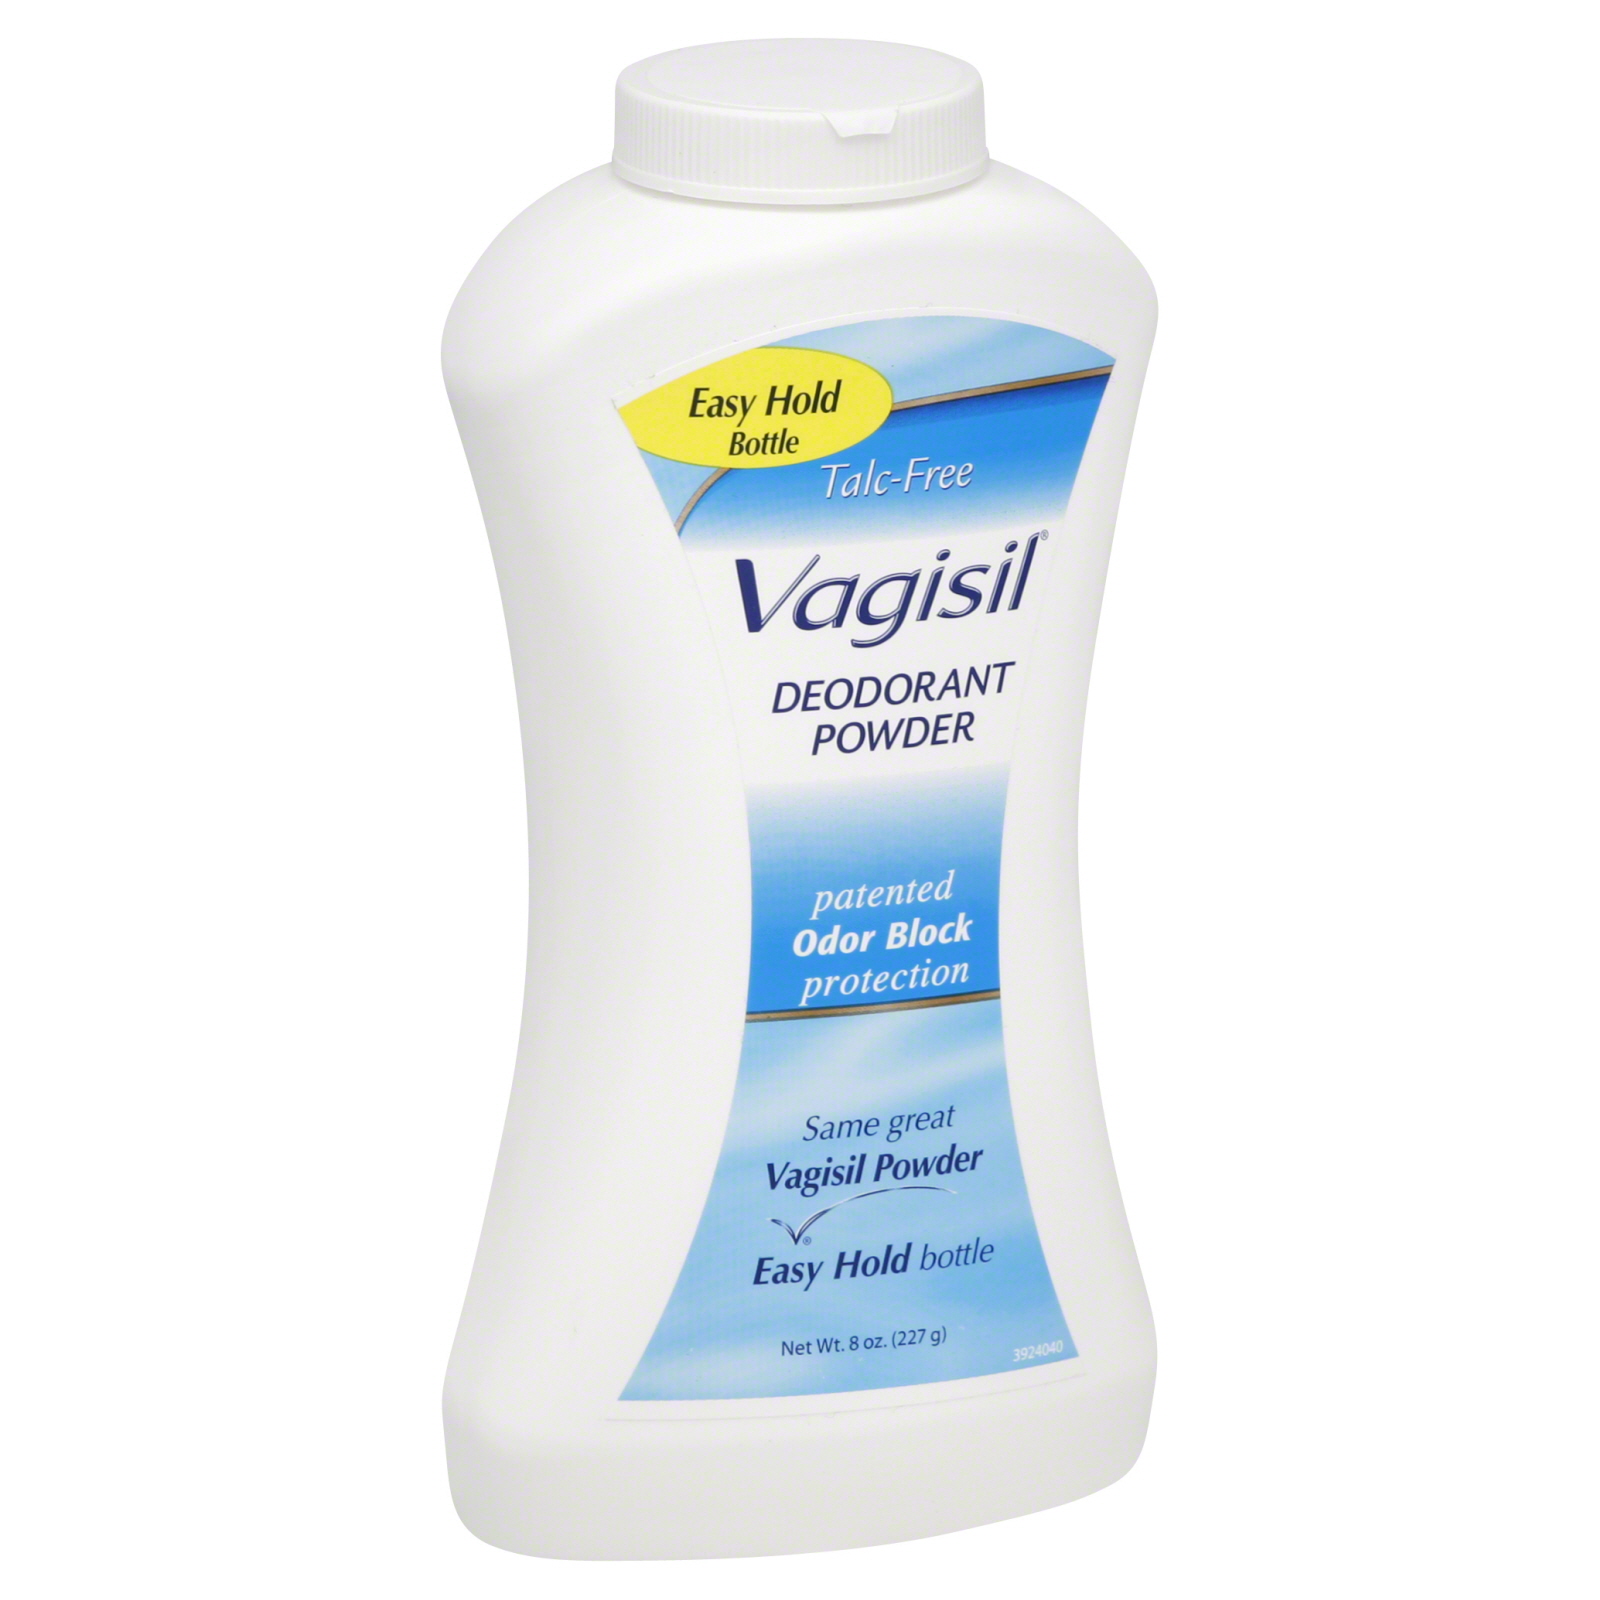 Vagisil Deodorant Powder, Talc-Free, 8 oz (227 g)